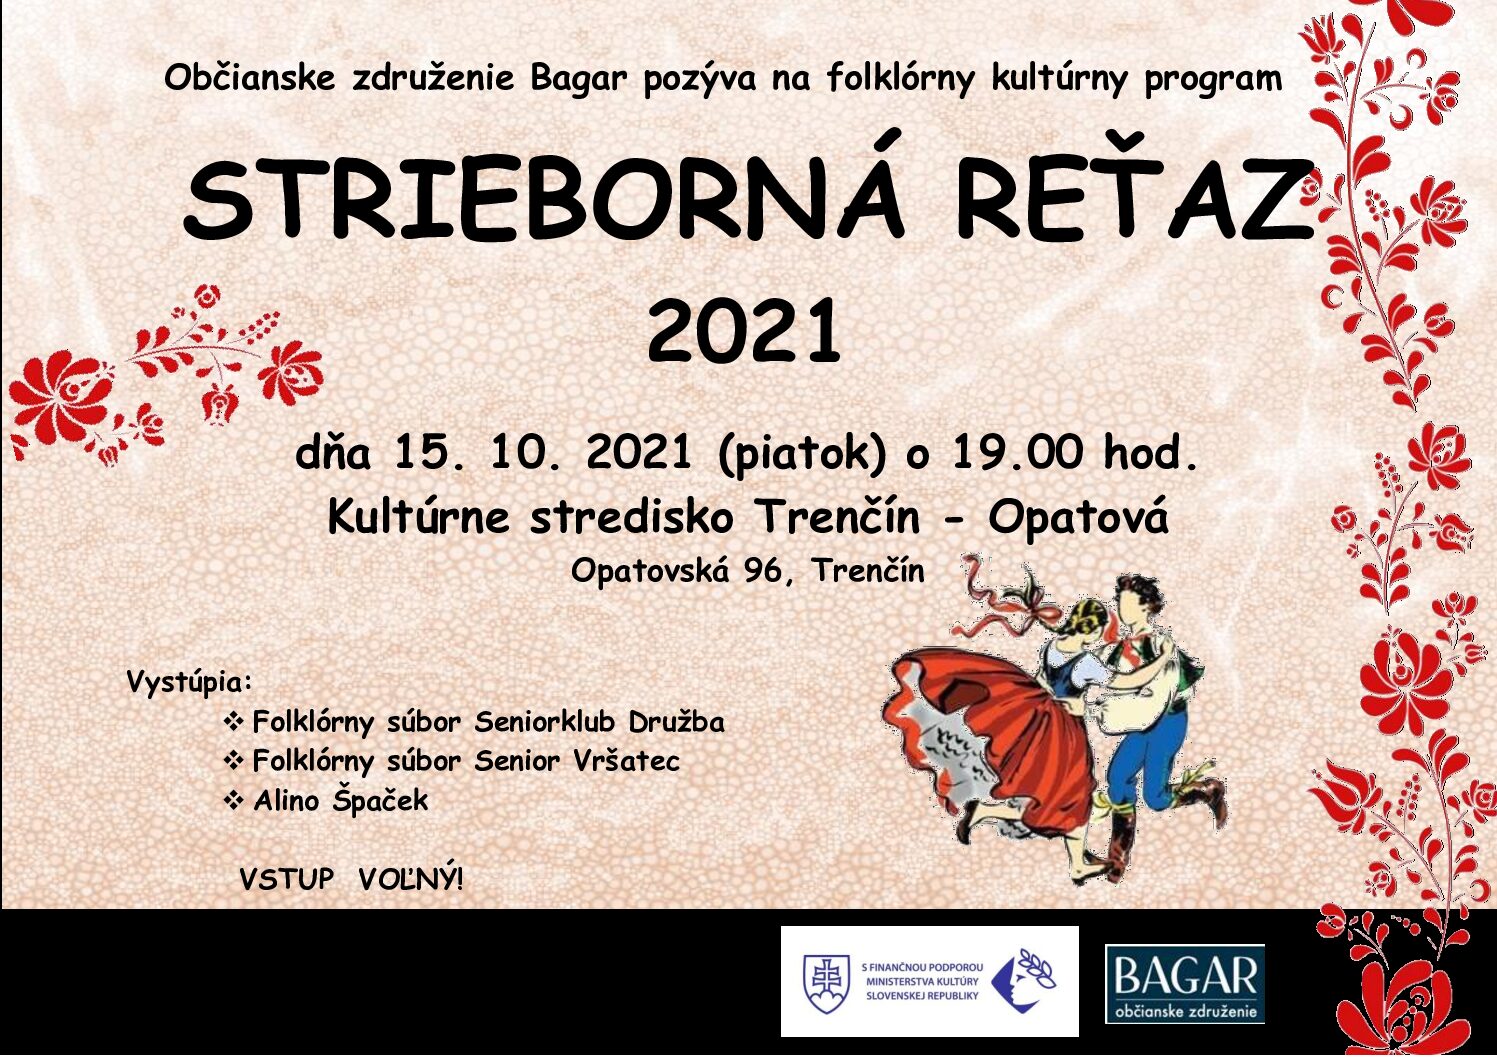 Strieborná reťaz 2021 v Bratislave